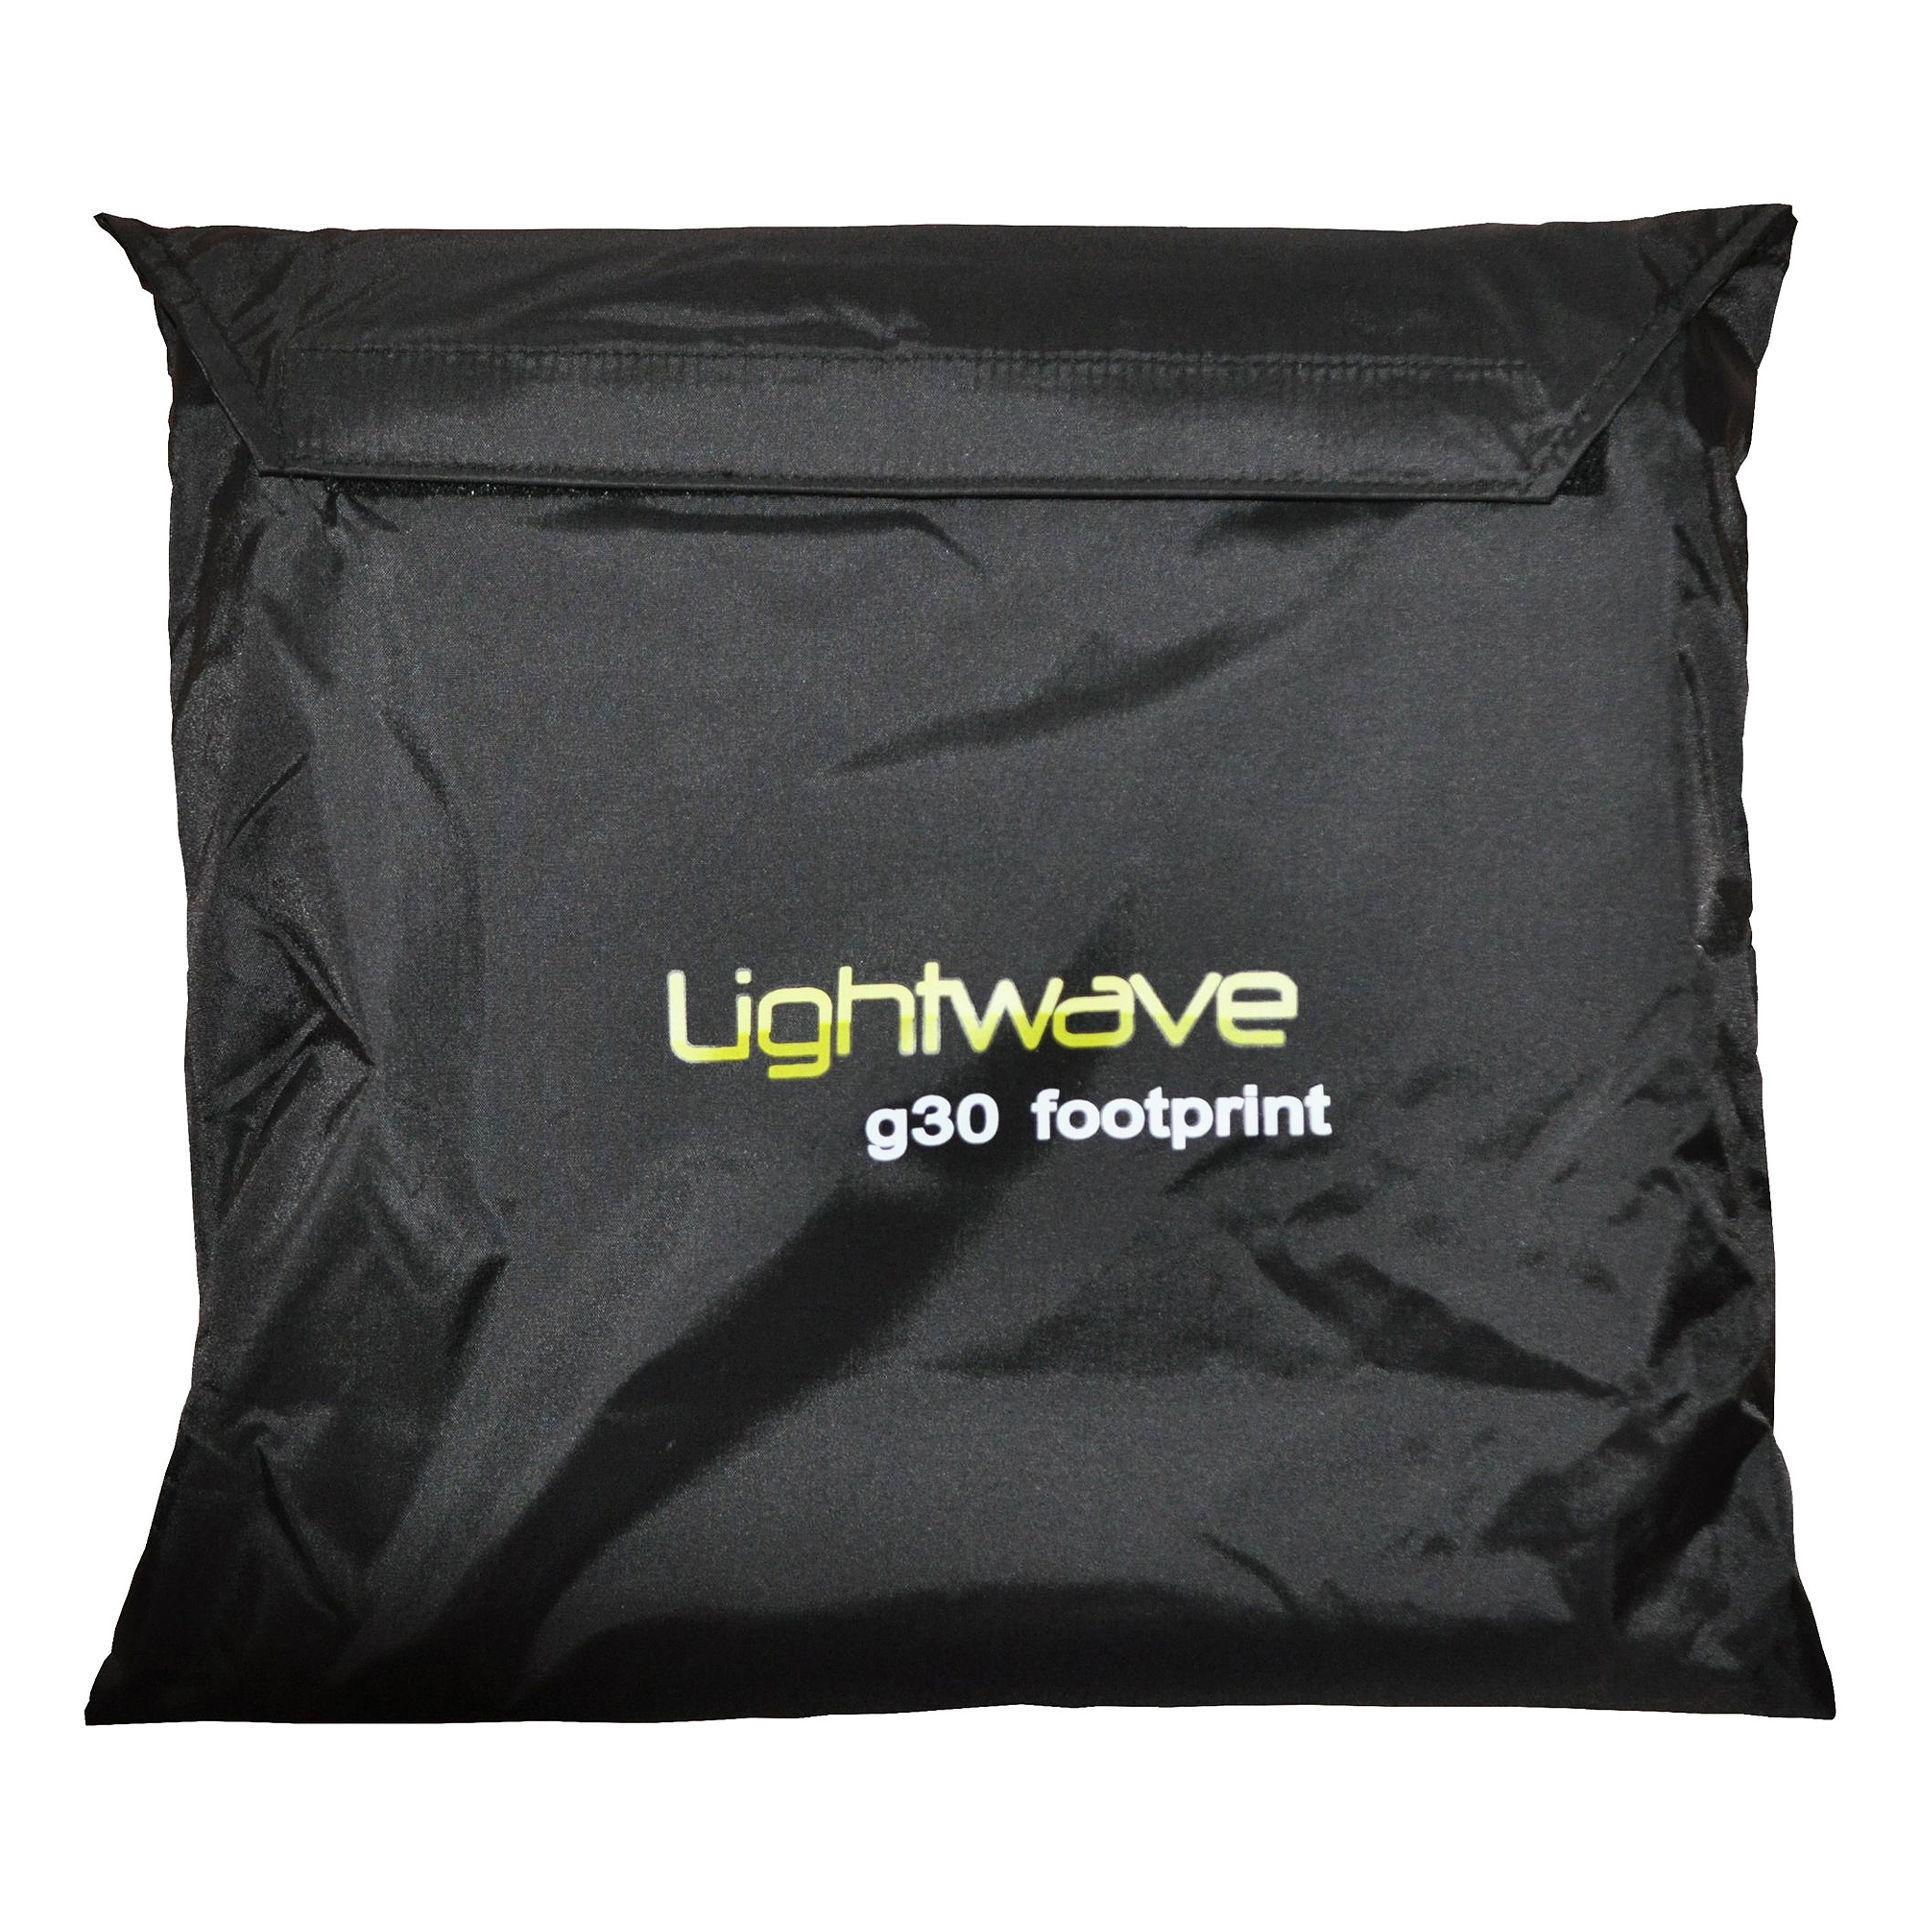 Lightwave g30 footprint